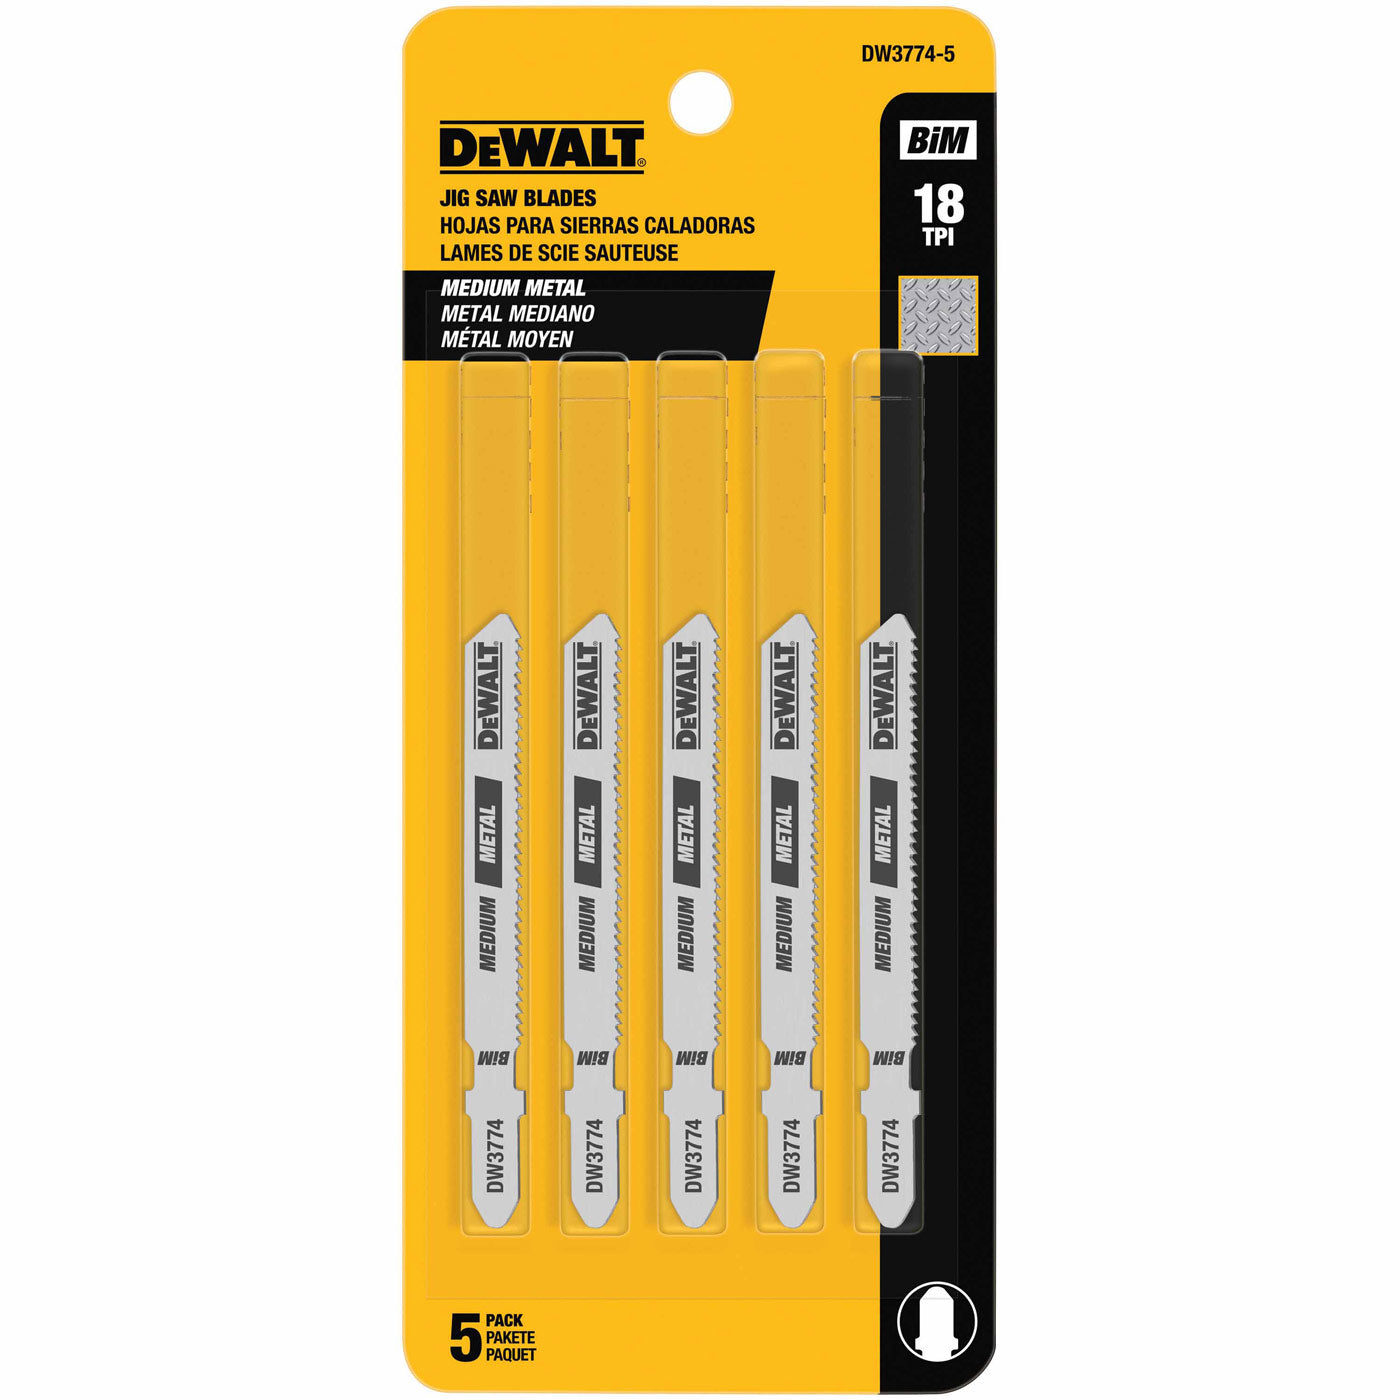 DeWalt DW3774-5 3" 18 TPI T-Shank Cobalt Steel Jig Saw Blade, 5 Pack